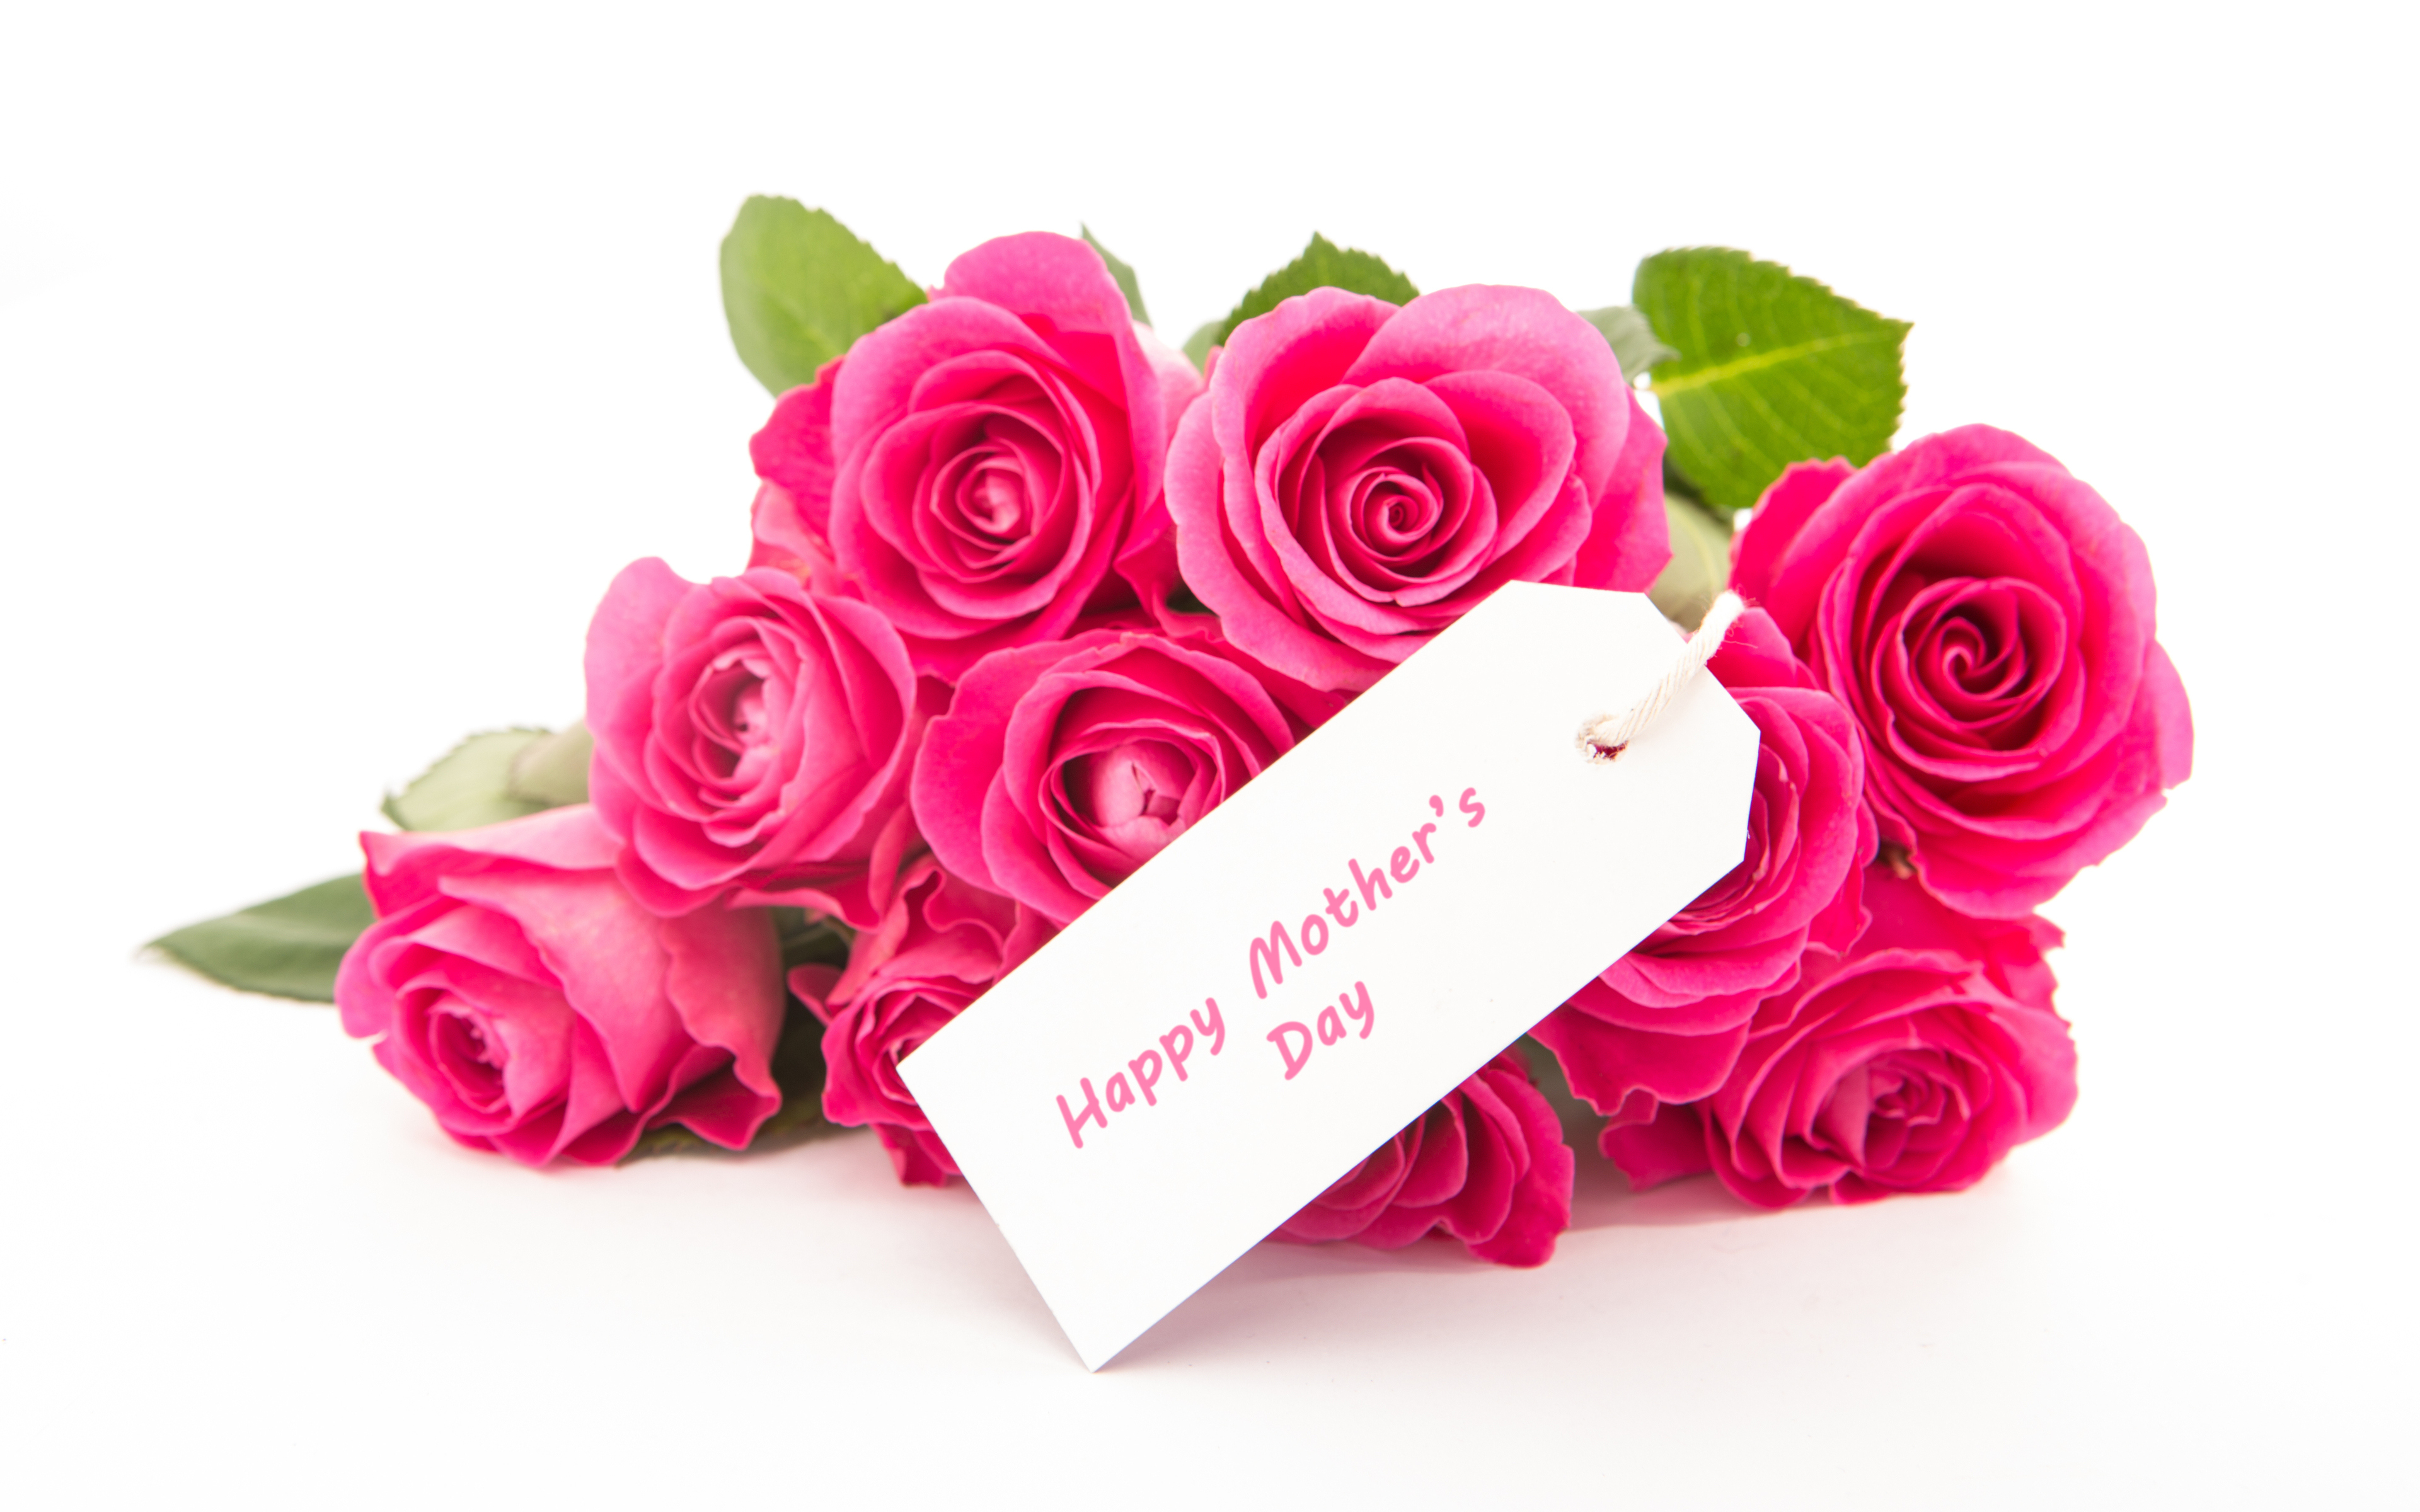 Róże, Bukiet, Napis, Happy Mothers Day, Dzień Matki